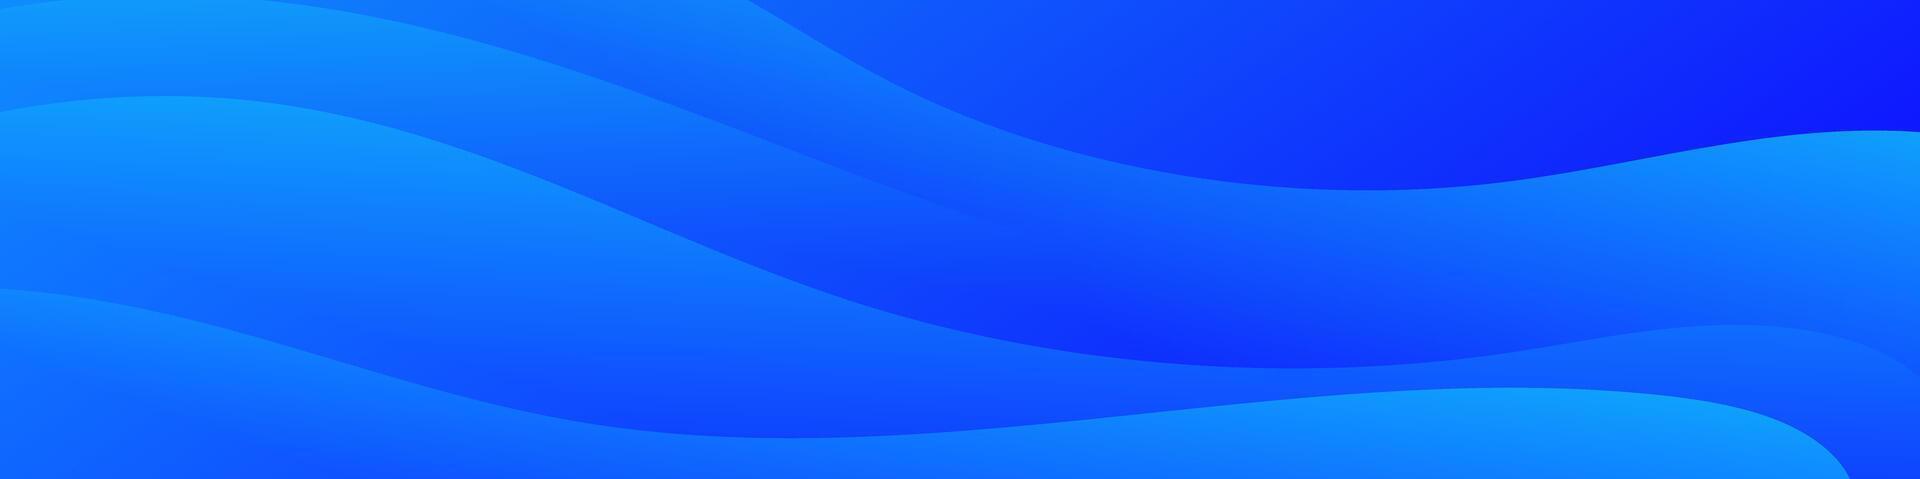 abstrakt blå baner Färg med en unik vågig design. den är idealisk för skapande öga fångst rubriker, PR banderoller, och grafisk element med en modern och dynamisk se. vektor